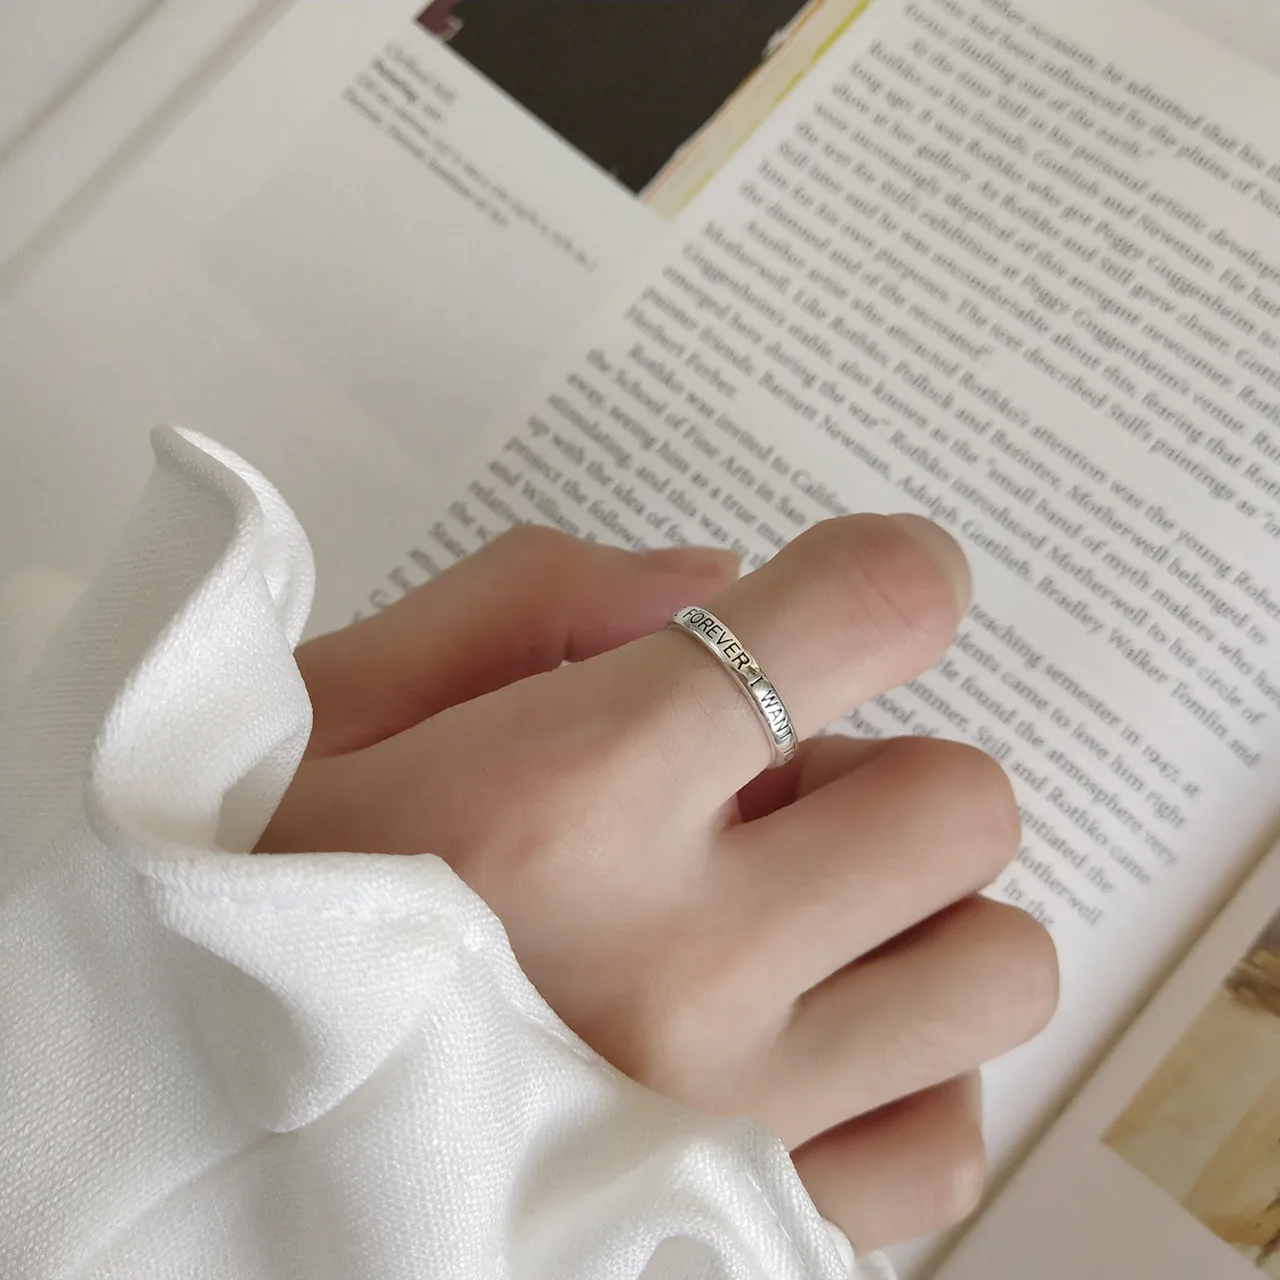 Kinel S925 стерлингового серебра ювелирные изделия простое кольцо личности украшения хипстера Двухслойное кольцо Ретро дизайн bamboo раздел диких